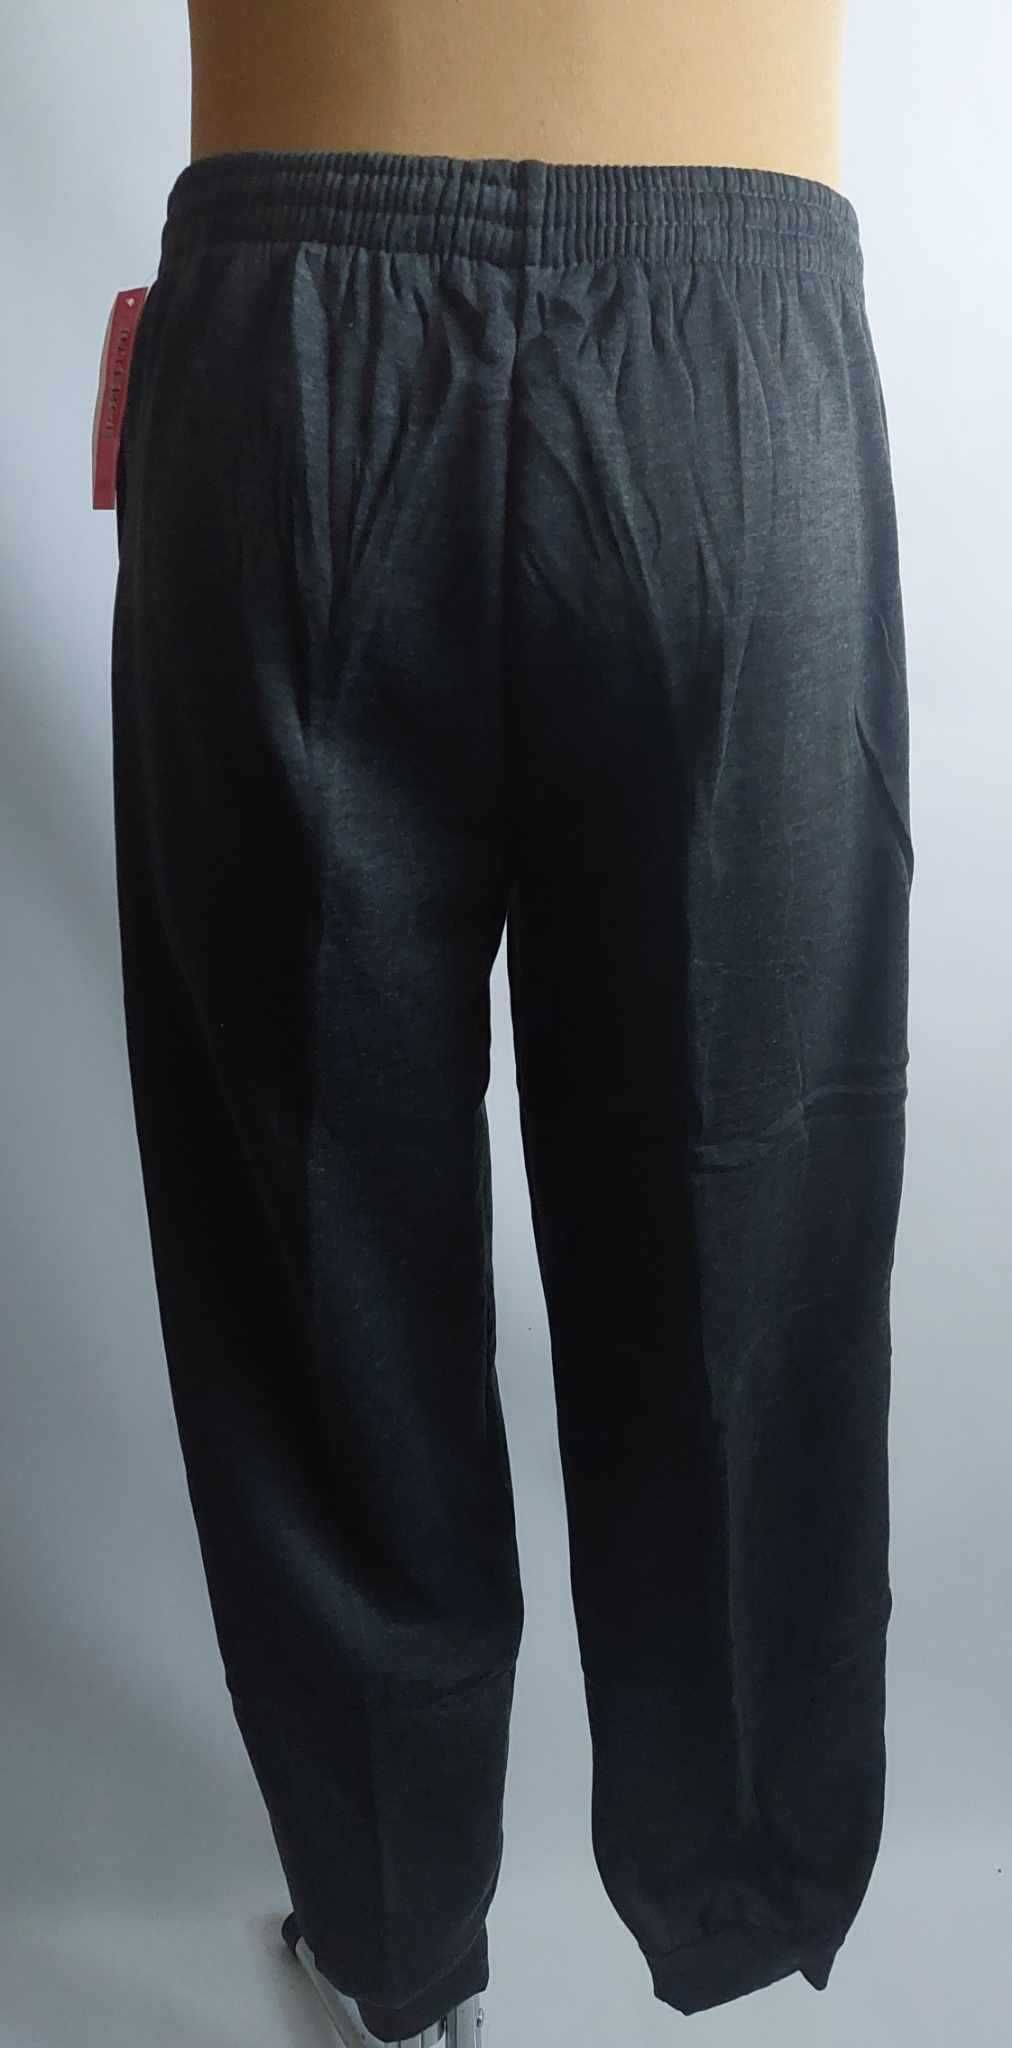 Spodnie męskie dresowe ocieplane ściągacze LINTEBOB R-41461-K r. L